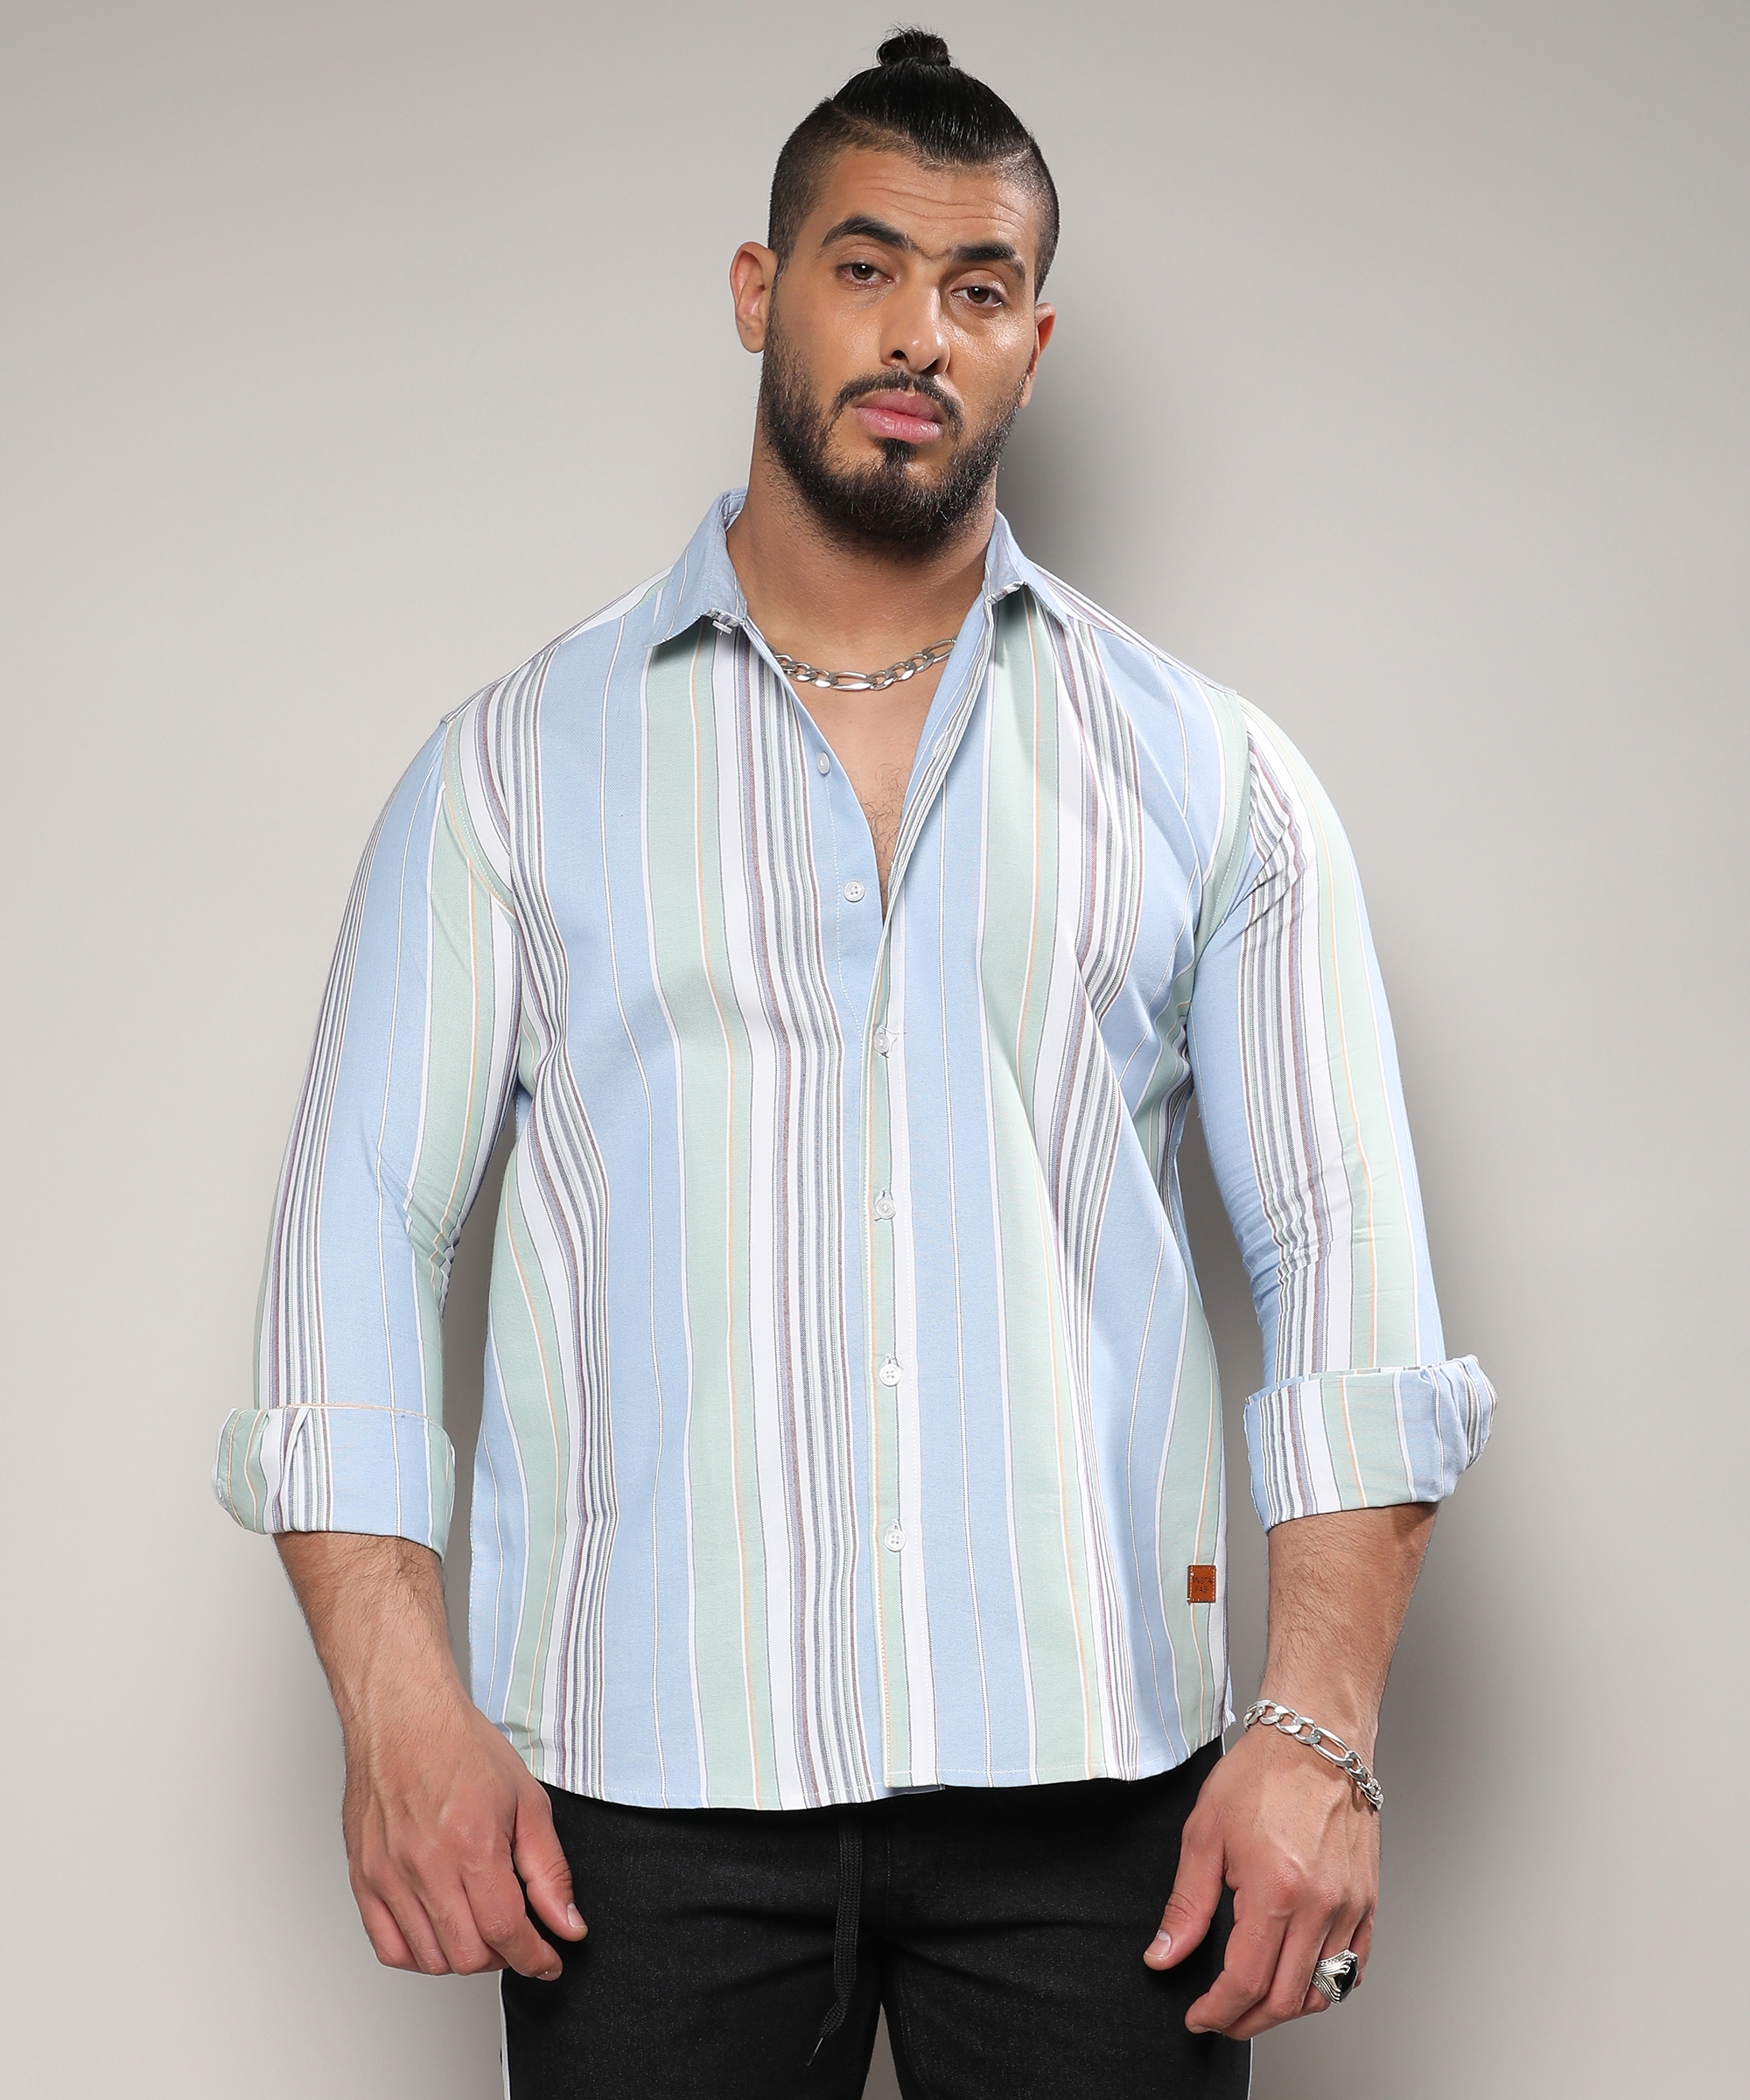 Instafab Plus | Men's Striped Cotton Button Up Shirt